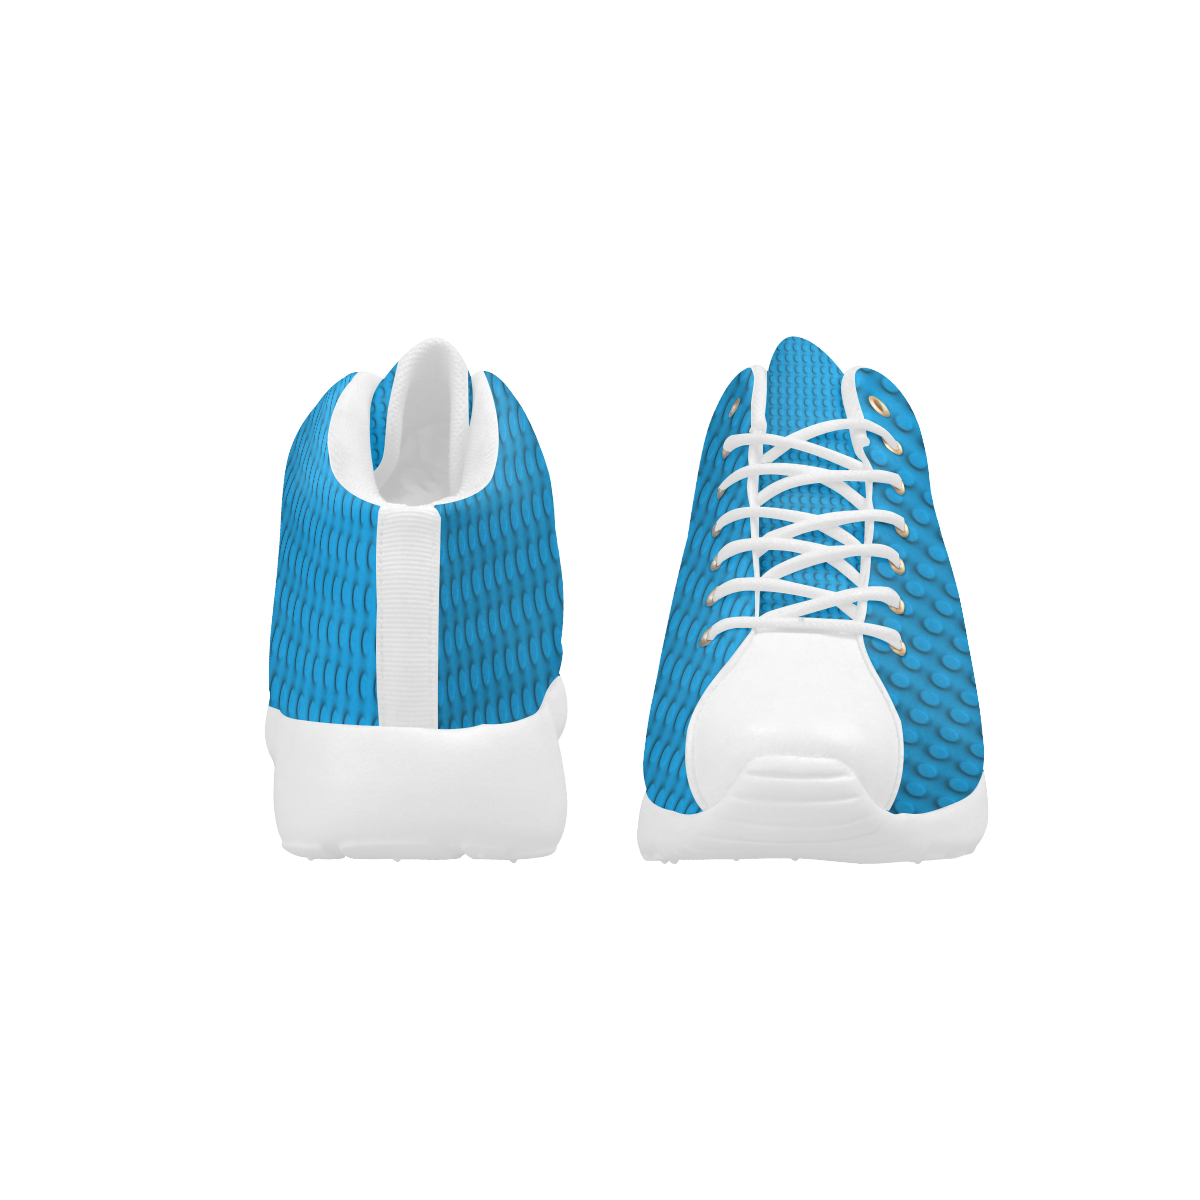 PLASTIC Men's Basketball Training Shoes (Model 47502)